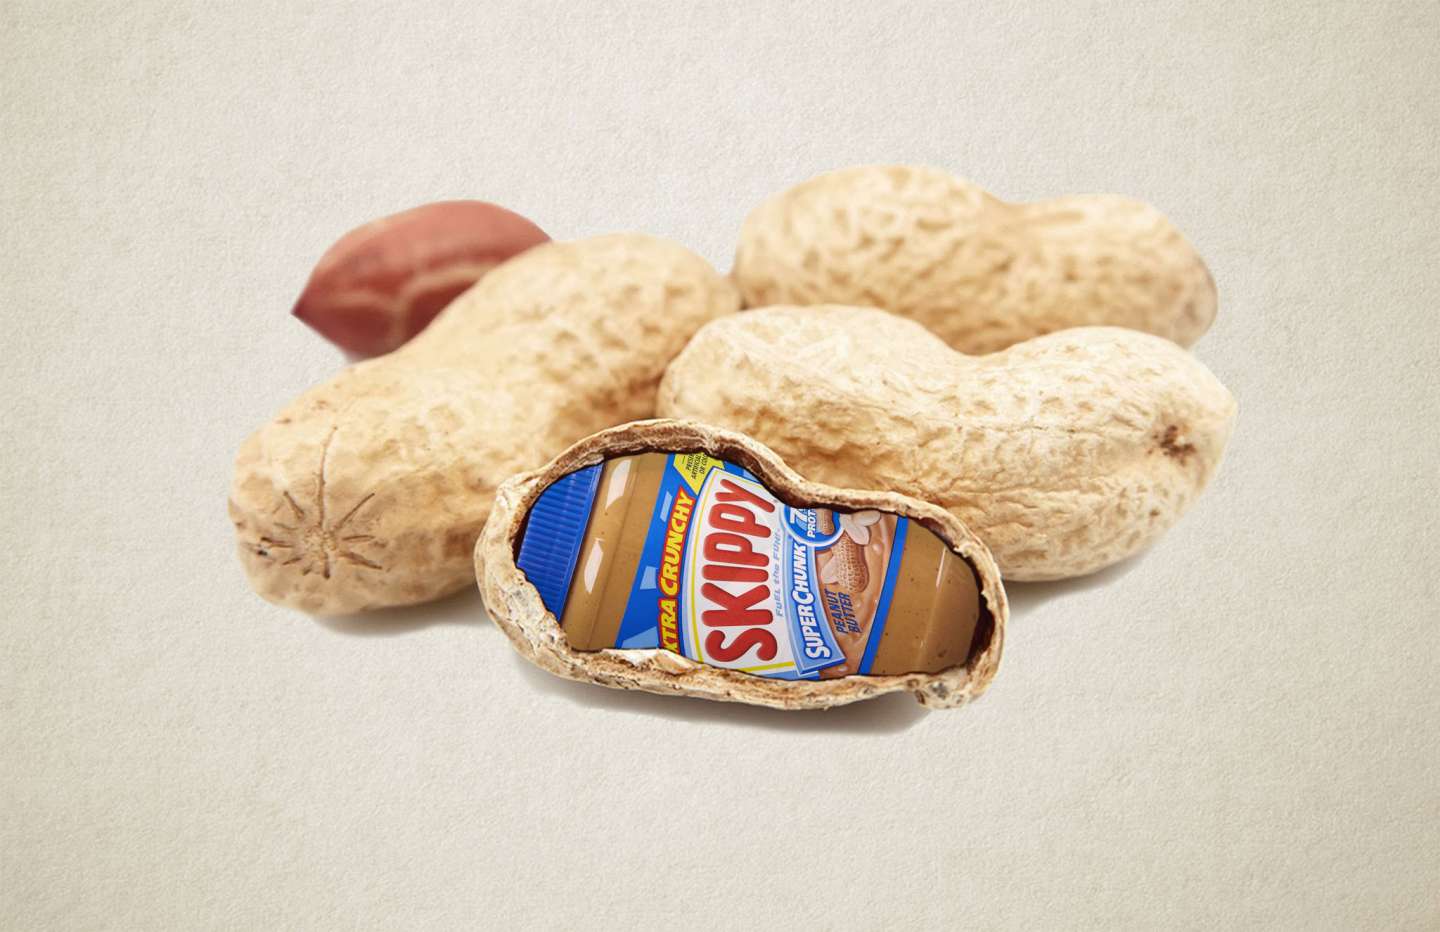 Real peanuts